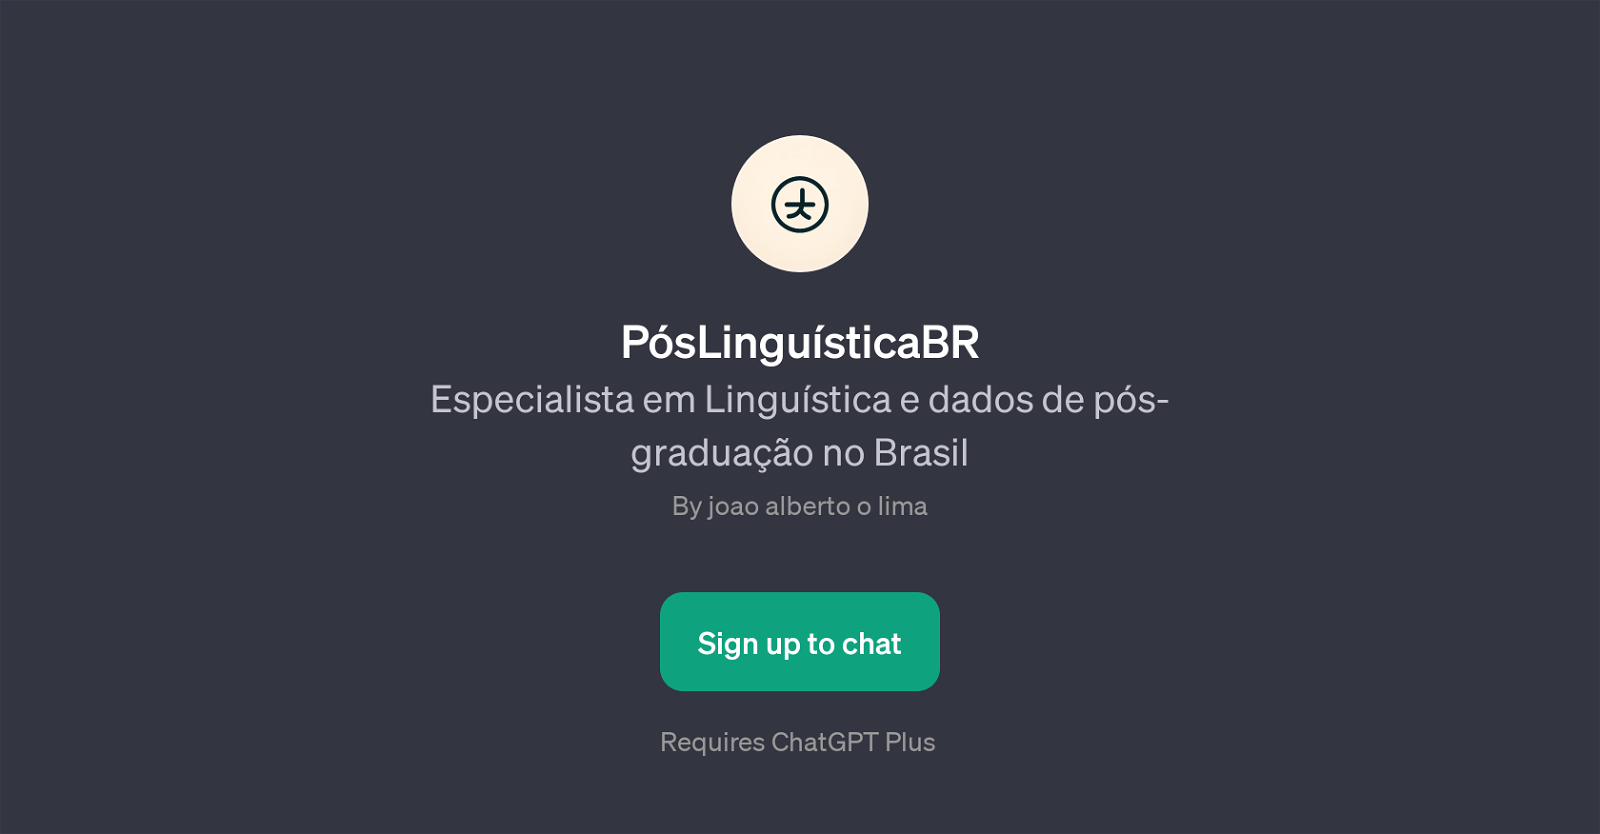 PsLingusticaBR website